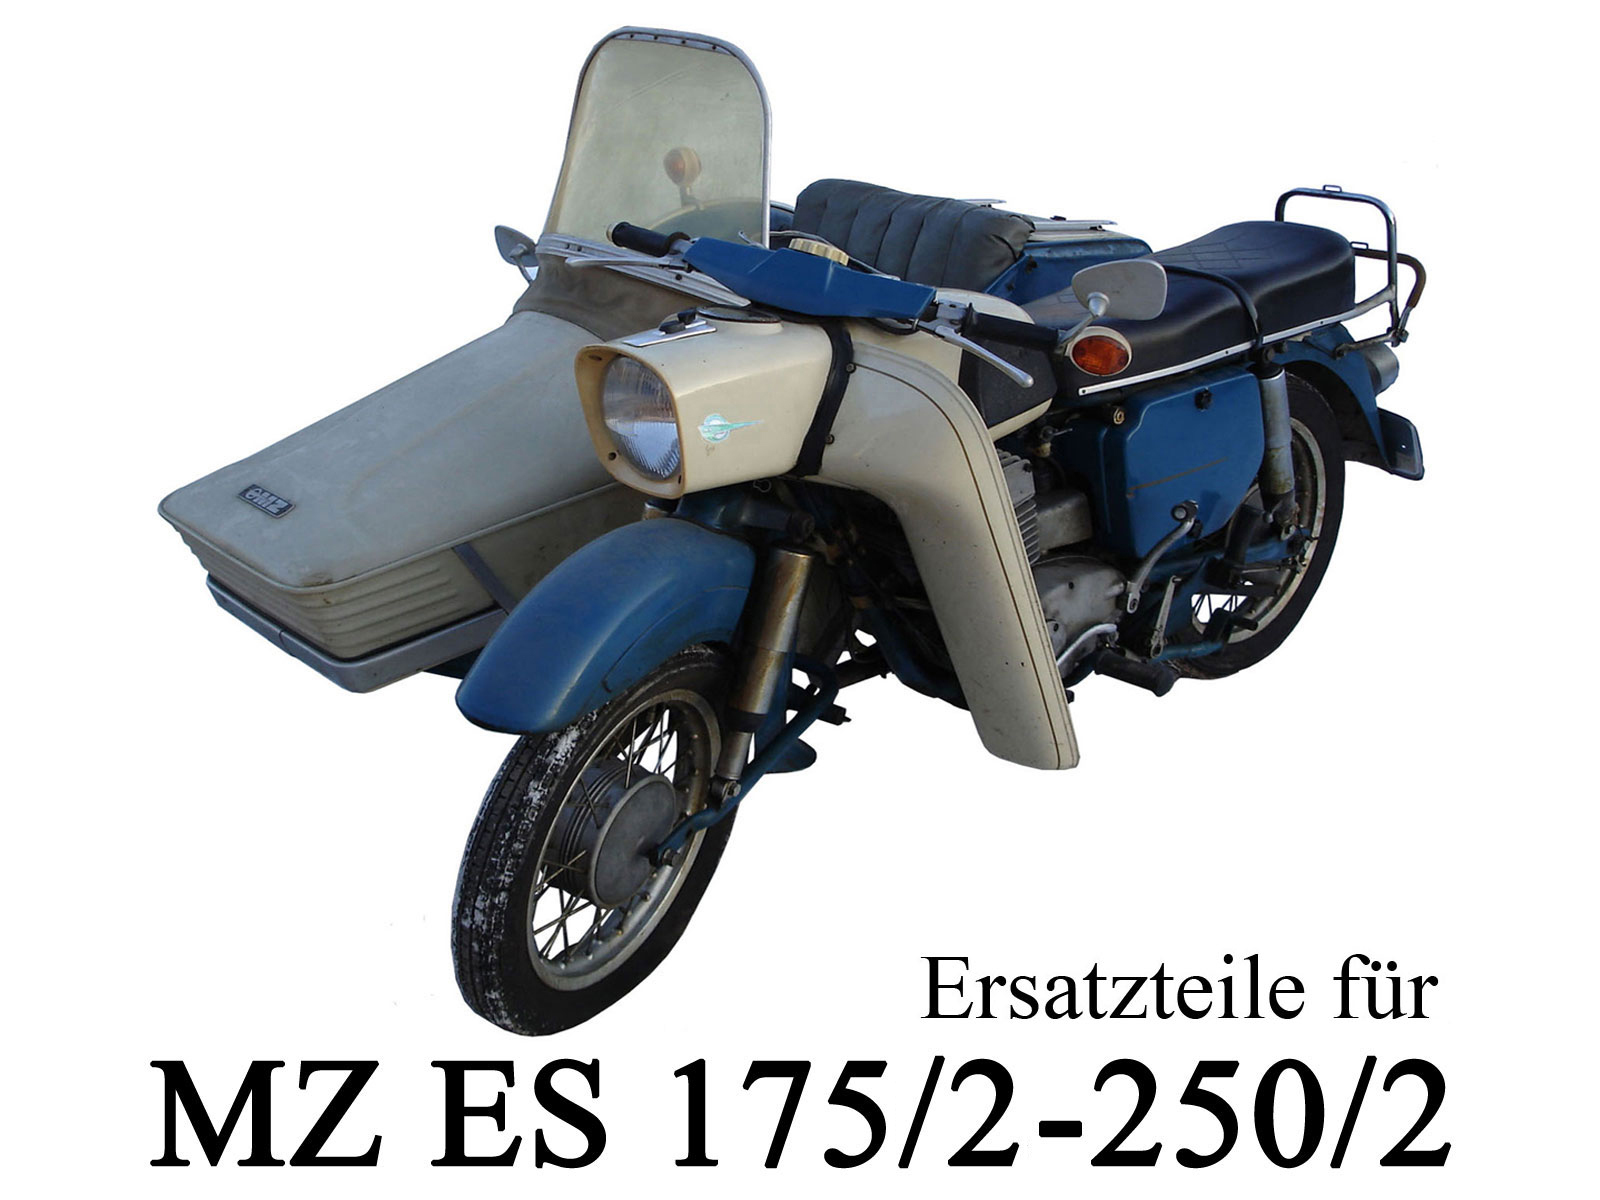 Ersatzteile kaufen für die DDR-Motorräder MZ ES 175/2 250/2